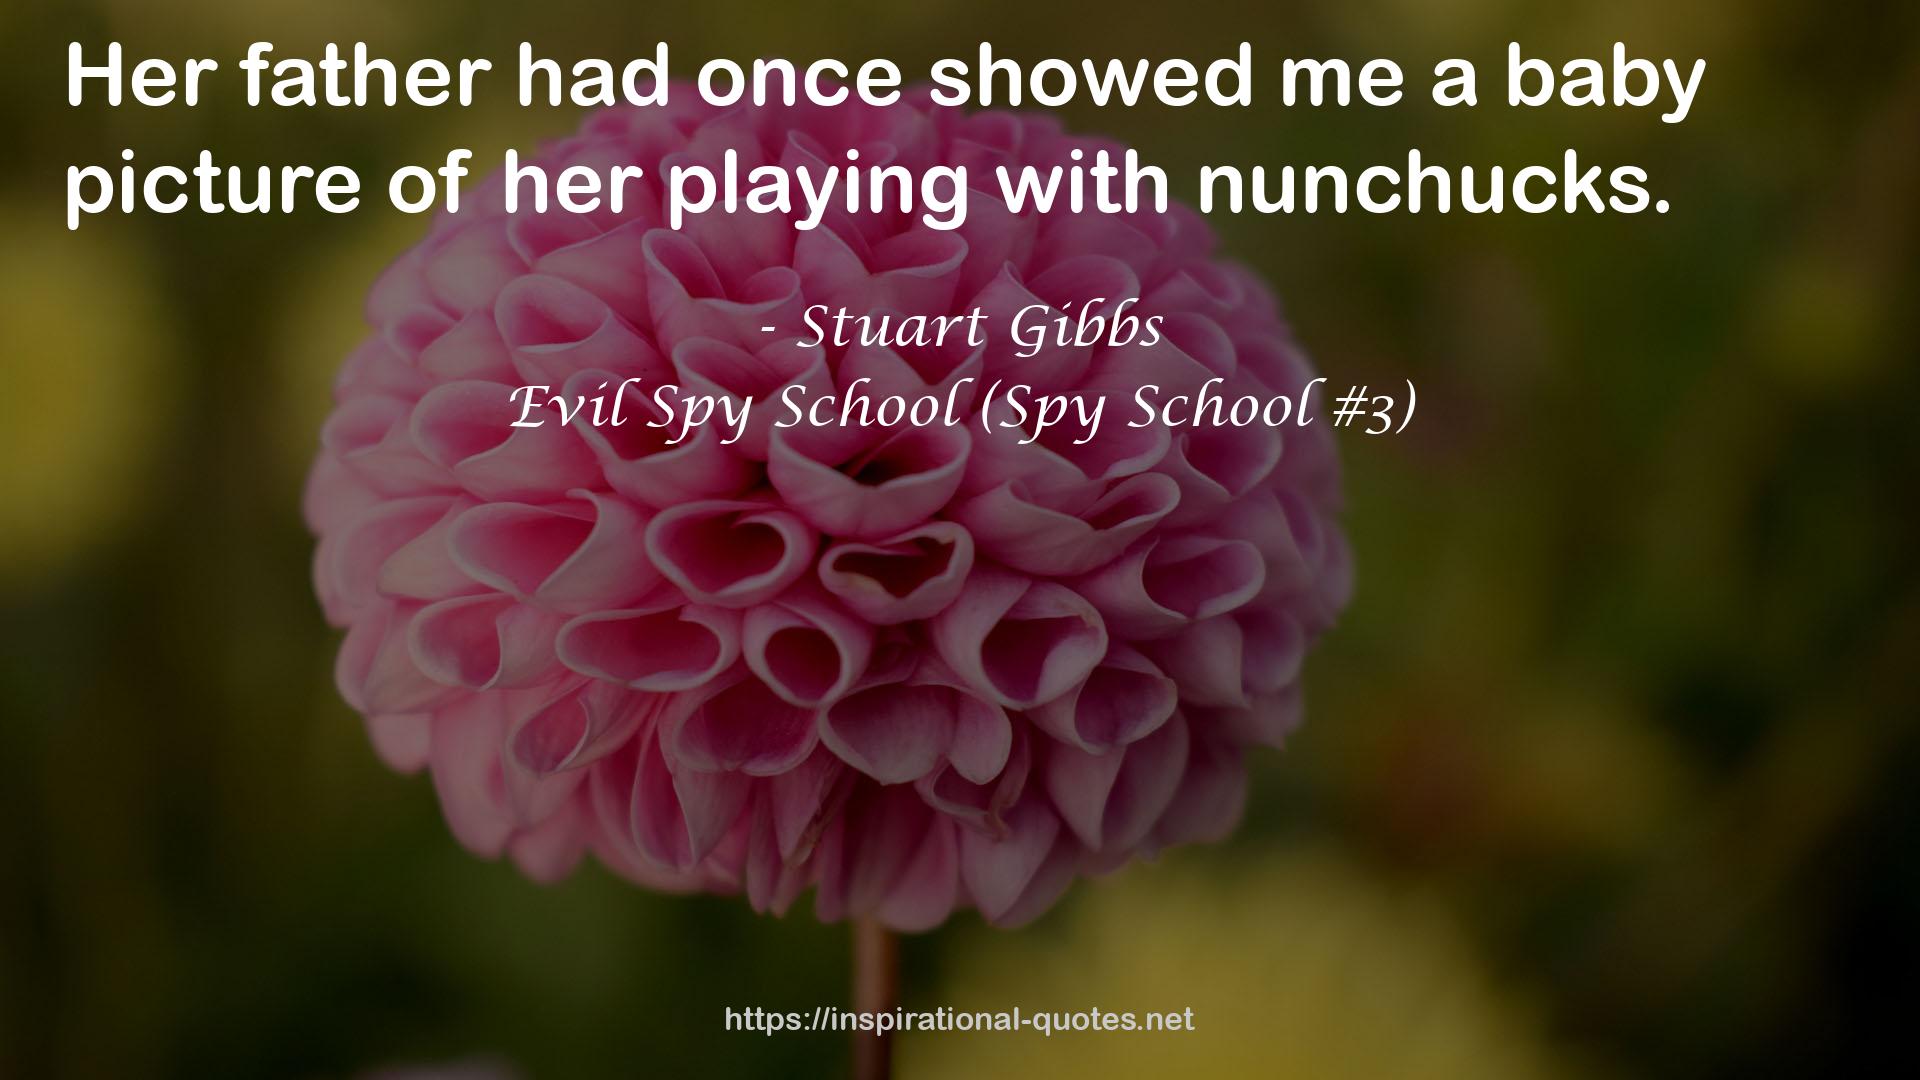 Evil Spy School (Spy School #3) QUOTES